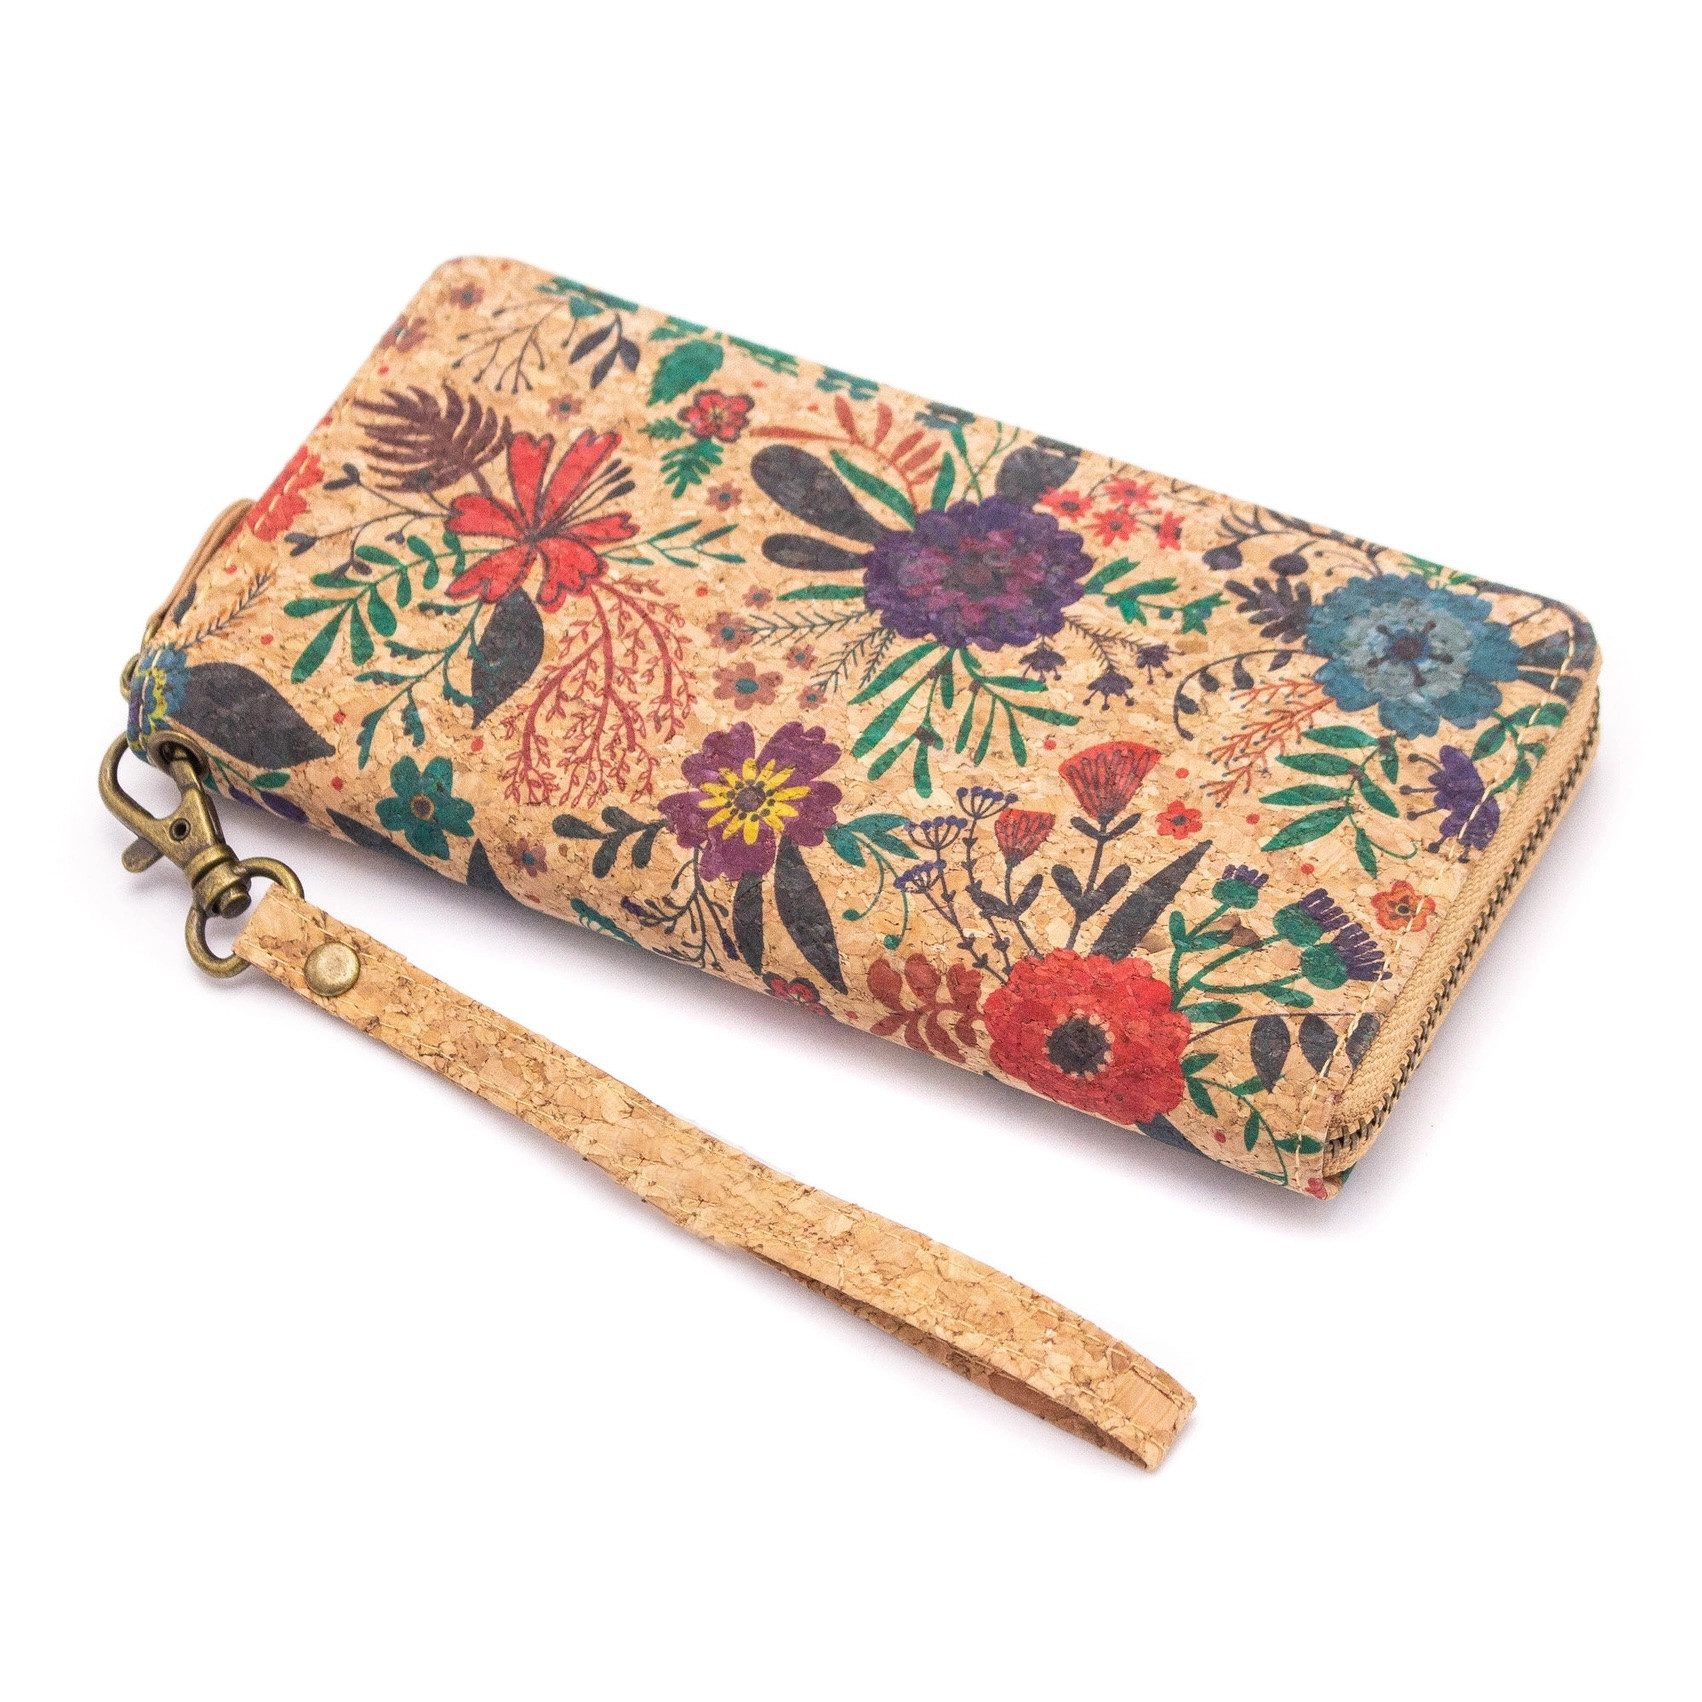 LK Trend & Style Brieftasche aus Naturkork mit Blumenmuster und Reißverschluss, Qualität, Nachhaltigkeit und Stil all diese Kriterien werden erfüllt